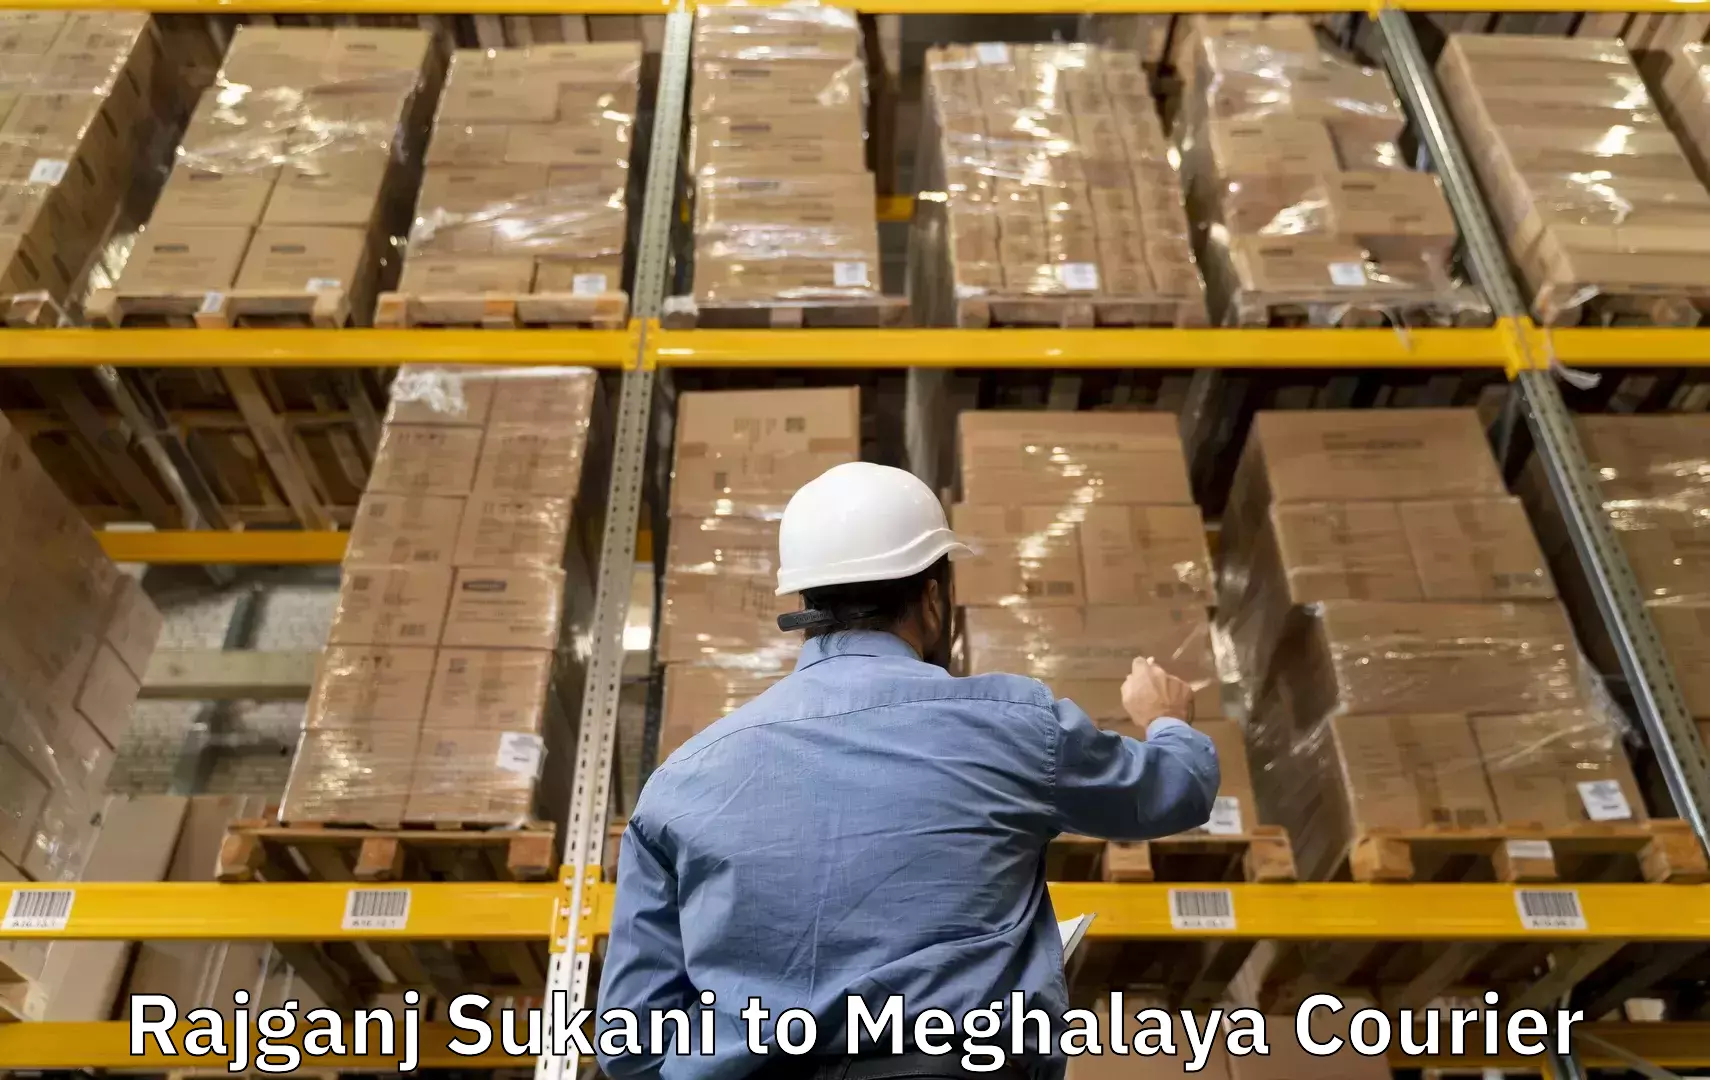 Baggage shipping experience Rajganj Sukani to Shillong